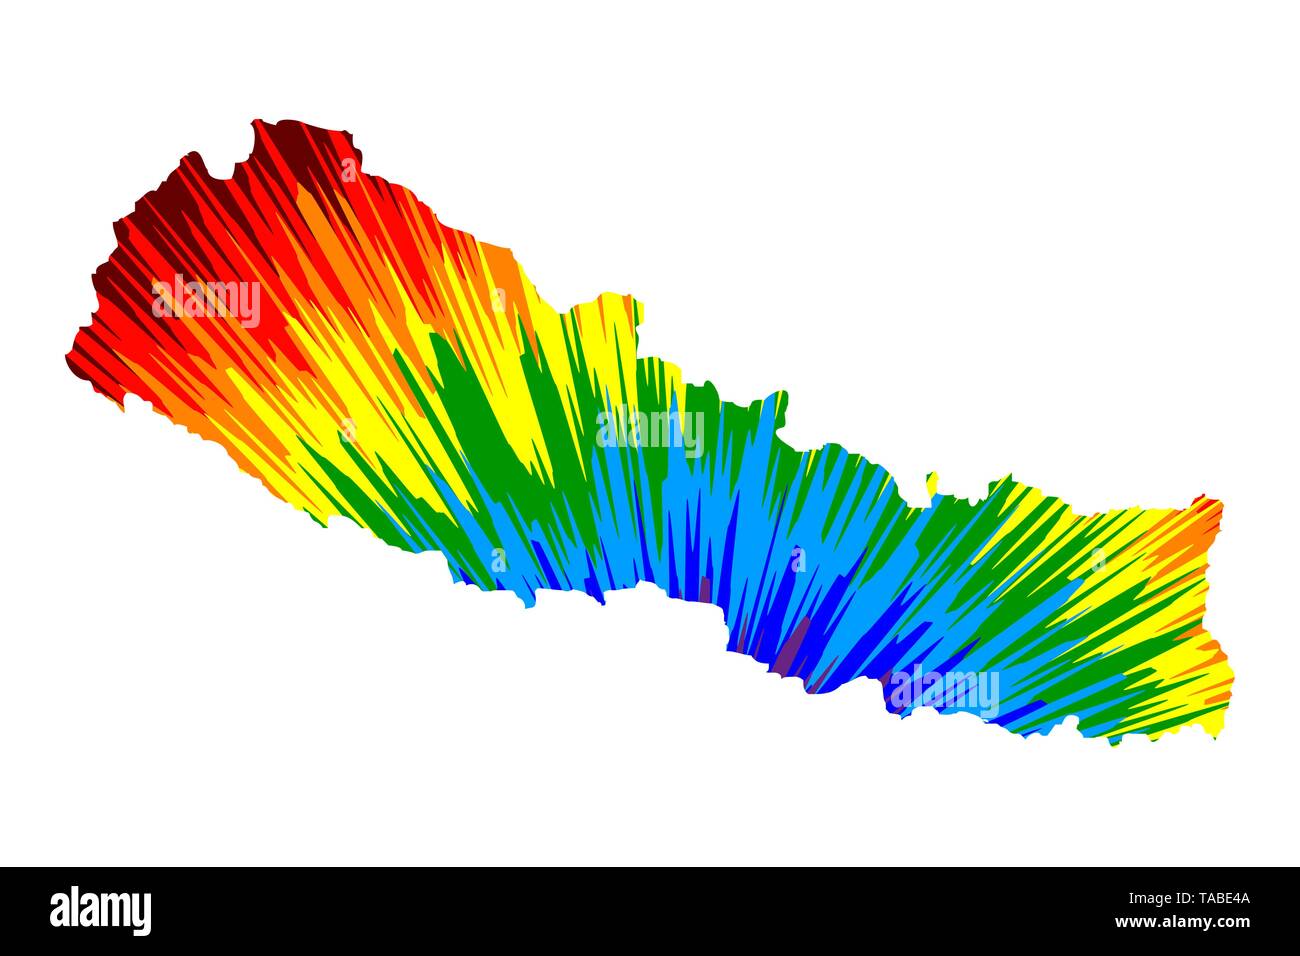 Népal - carte est conçu rainbow abstract colorful pattern, République fédérale démocratique du Népal carte de color explosion, Illustration de Vecteur